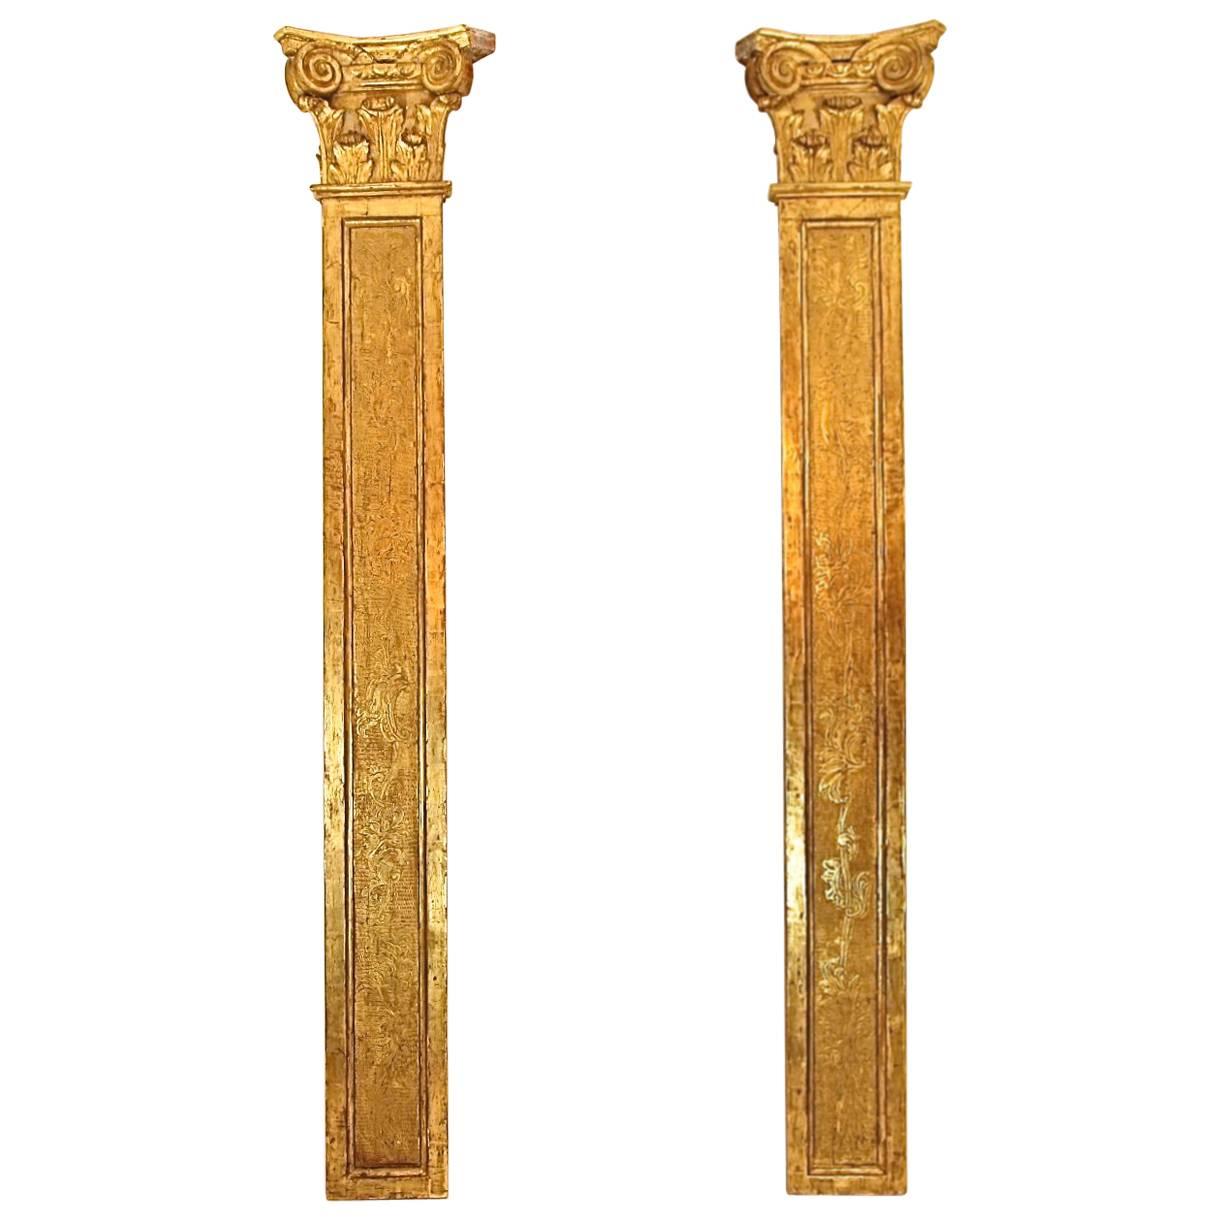 Paar geschnitzte Palisander aus vergoldetem Holz von Rgence aus dem frühen 18. Jahrhundert